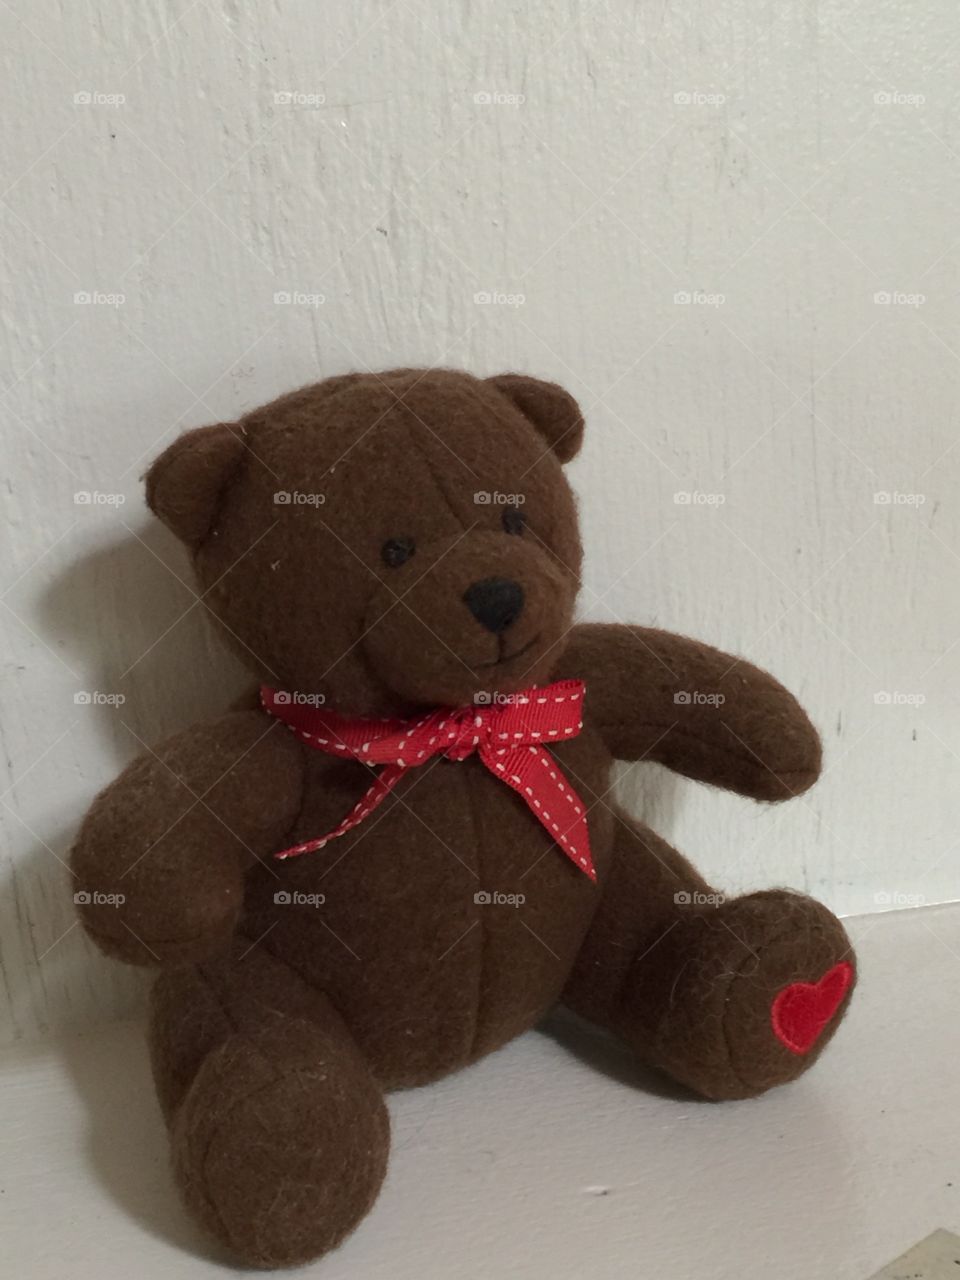 Teddy the bear. Just me the brown teddy bear